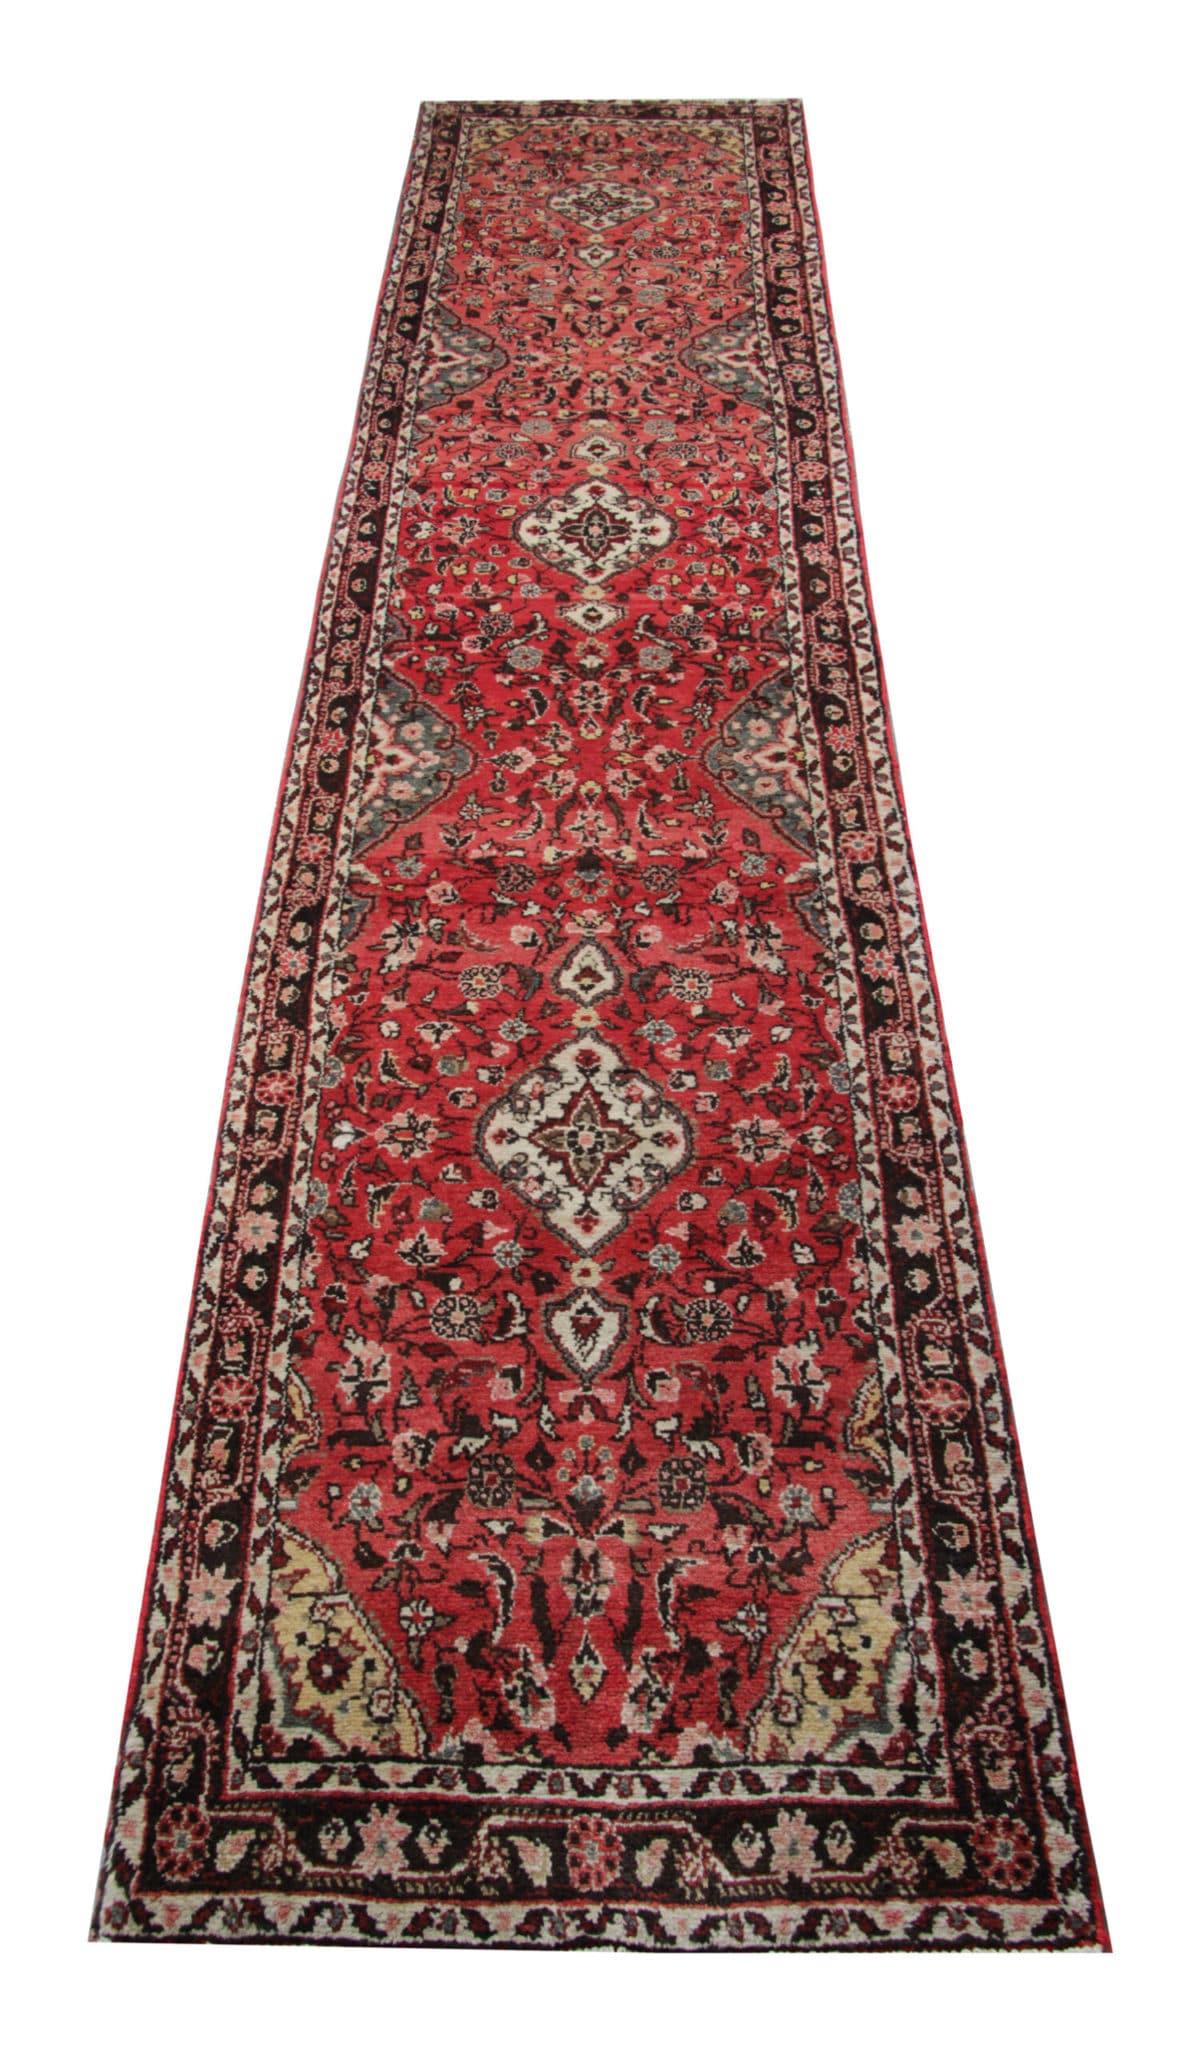 Persian Vintage Runner Floral Runner Rug, Rust Pink Carpet Runner, Wool Rug For Sale